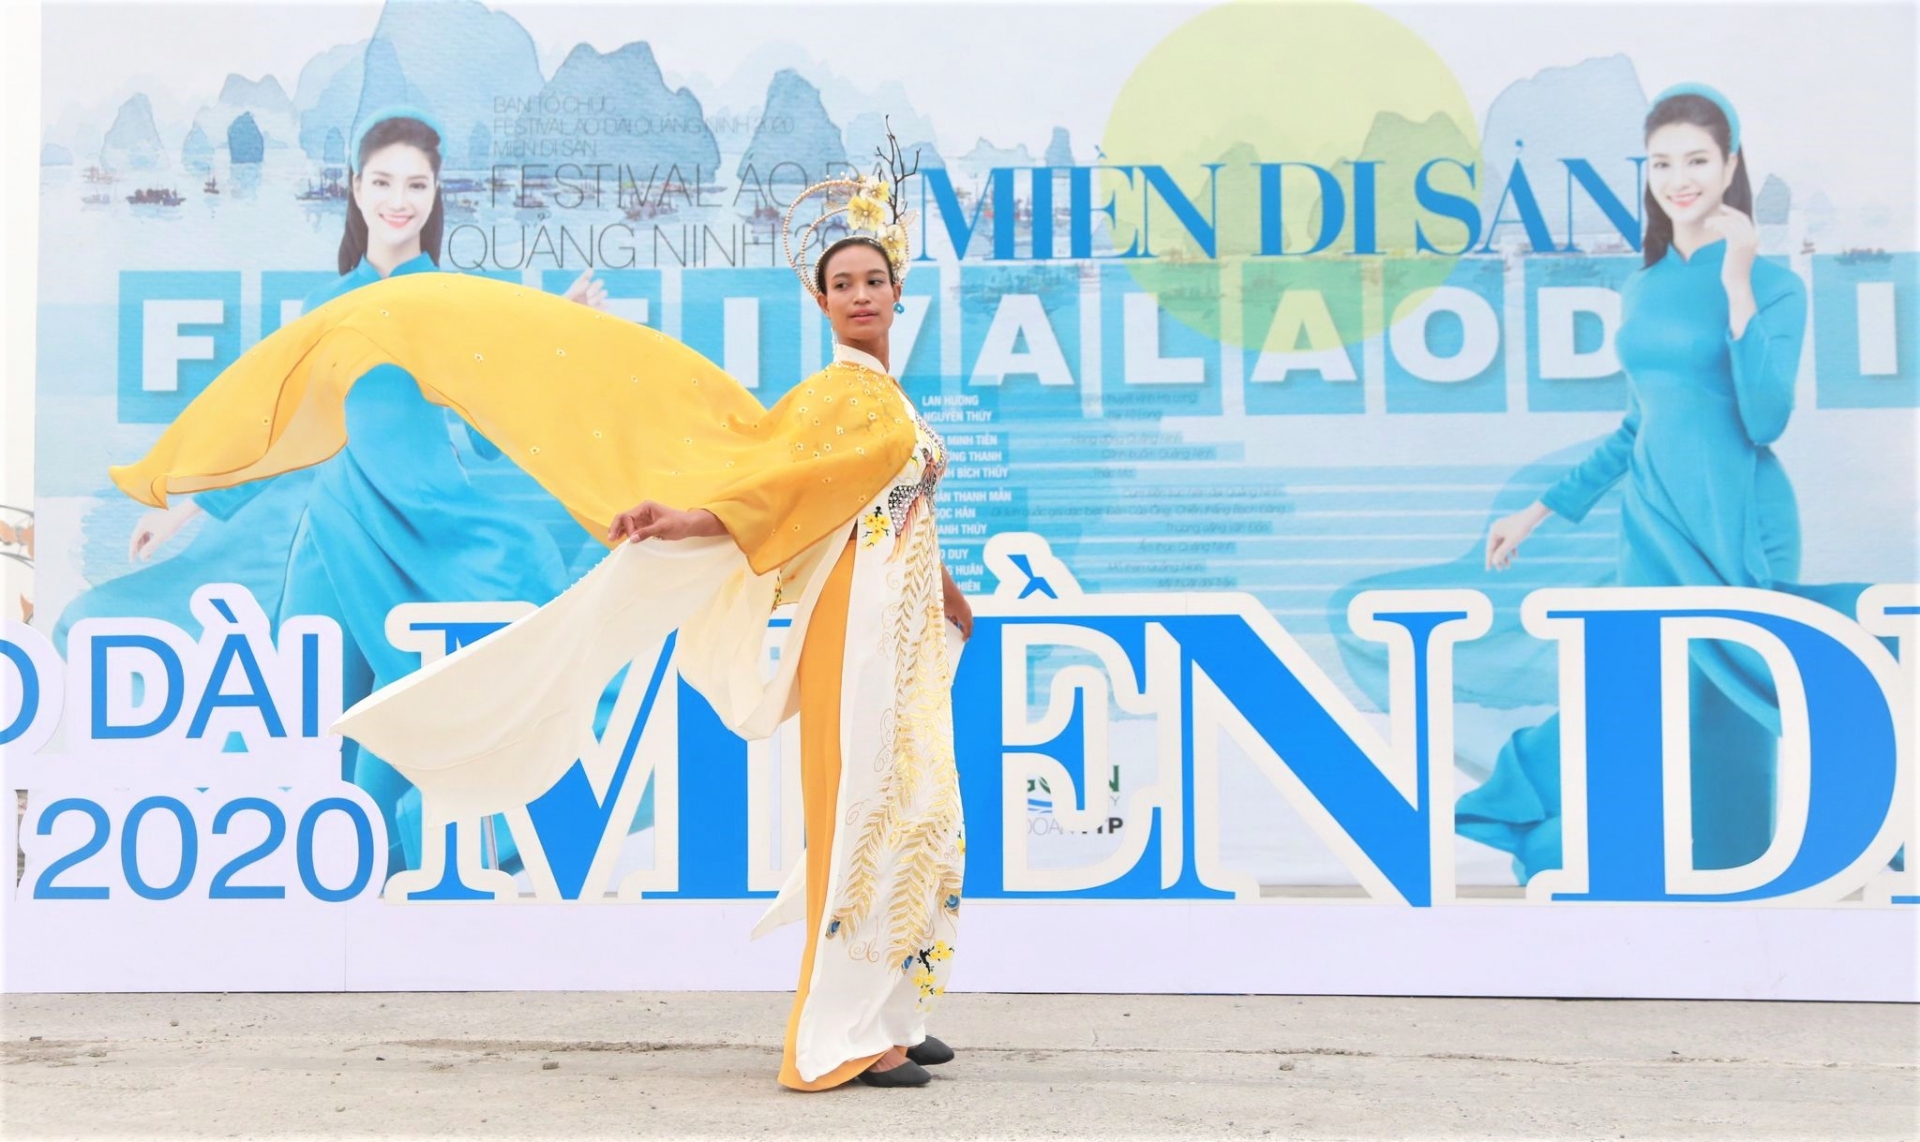 'Festival Áo dài Quảng Ninh 2020 - Miền Di sản' là một hoạt động văn hóa nhằm kích cầu du lịch